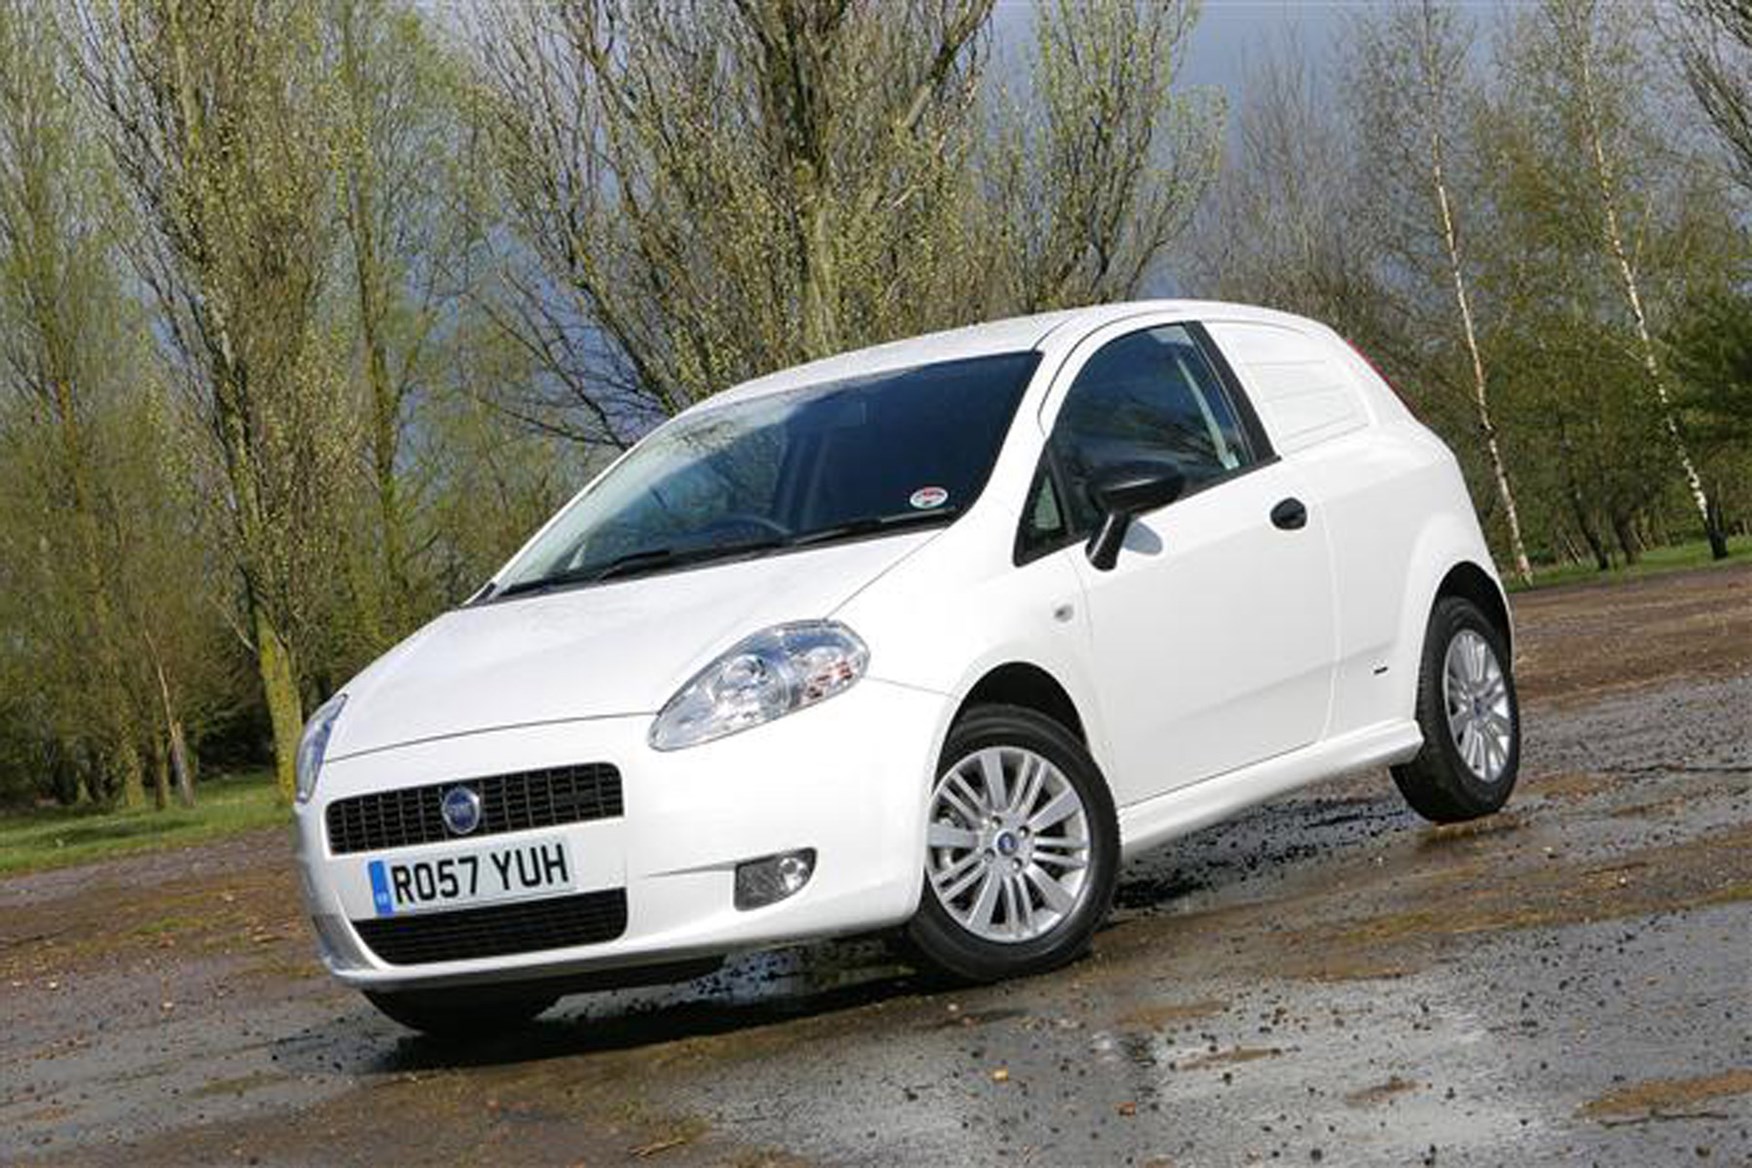 Fiat Grande Punto review on Parkers Vans - front